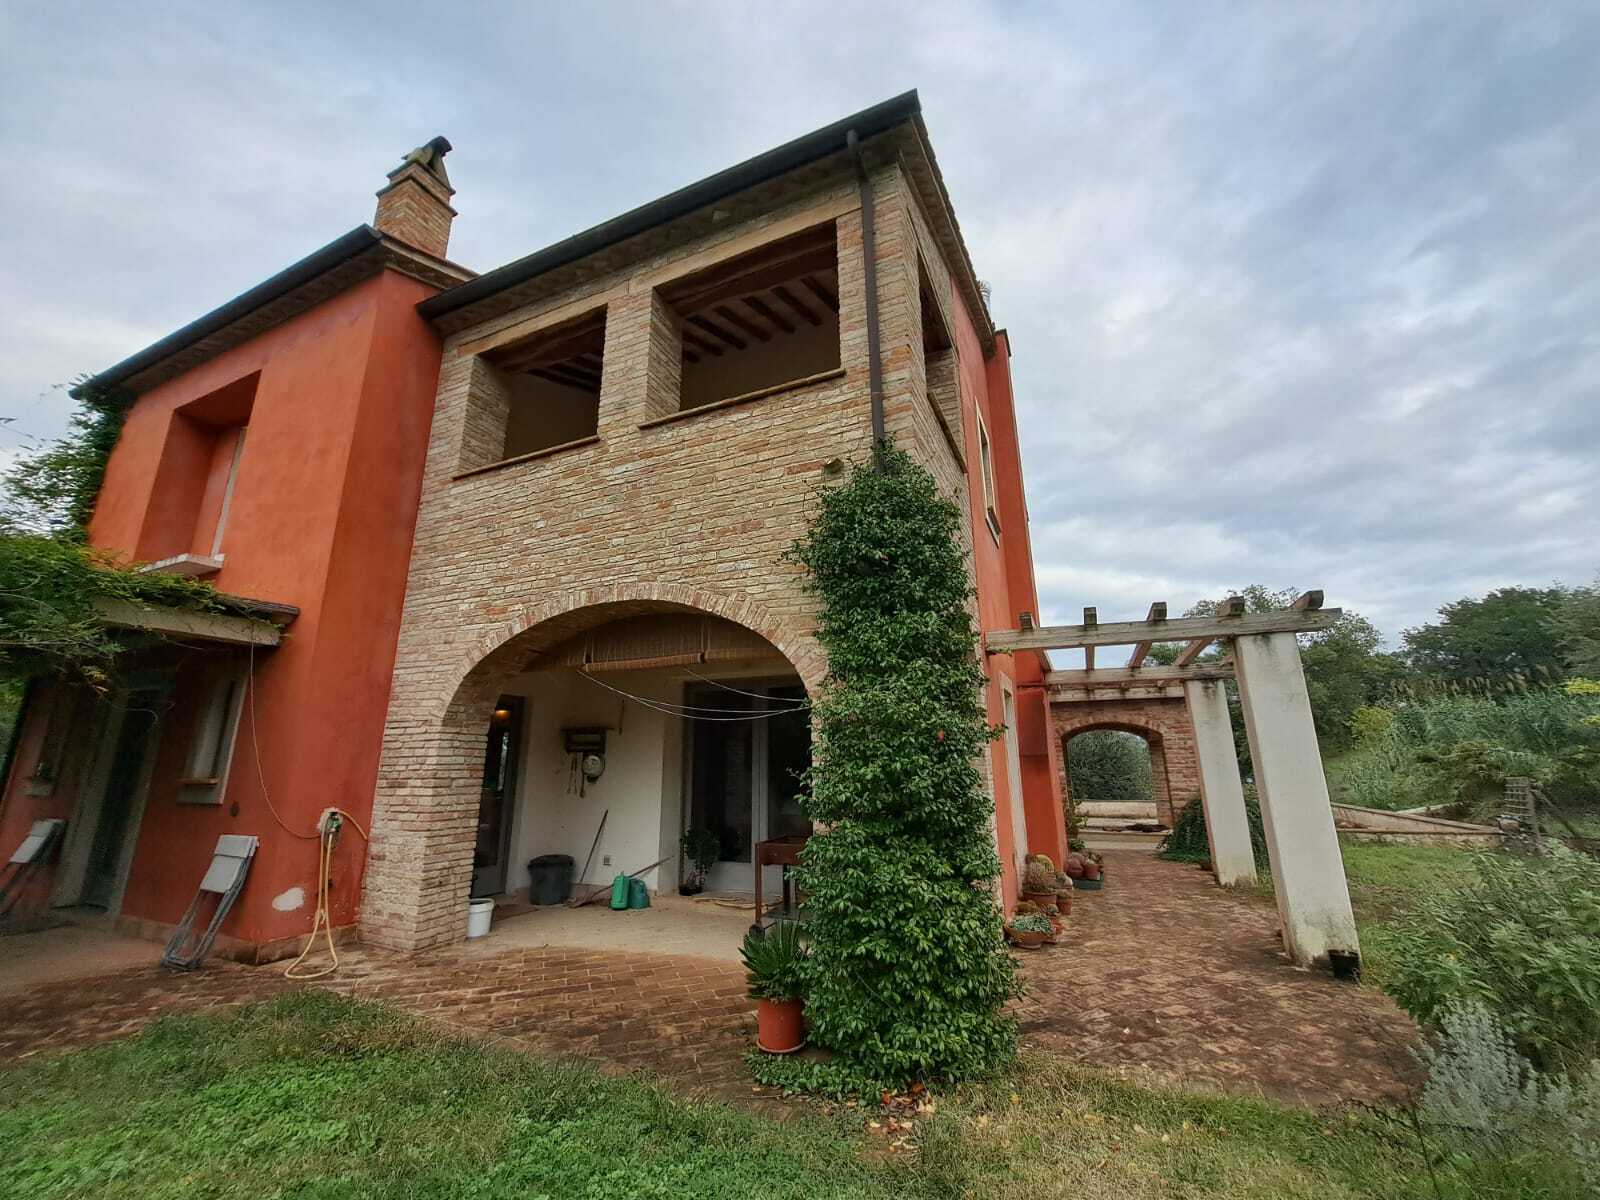 For sale cottage in quiet zone Narni Umbria